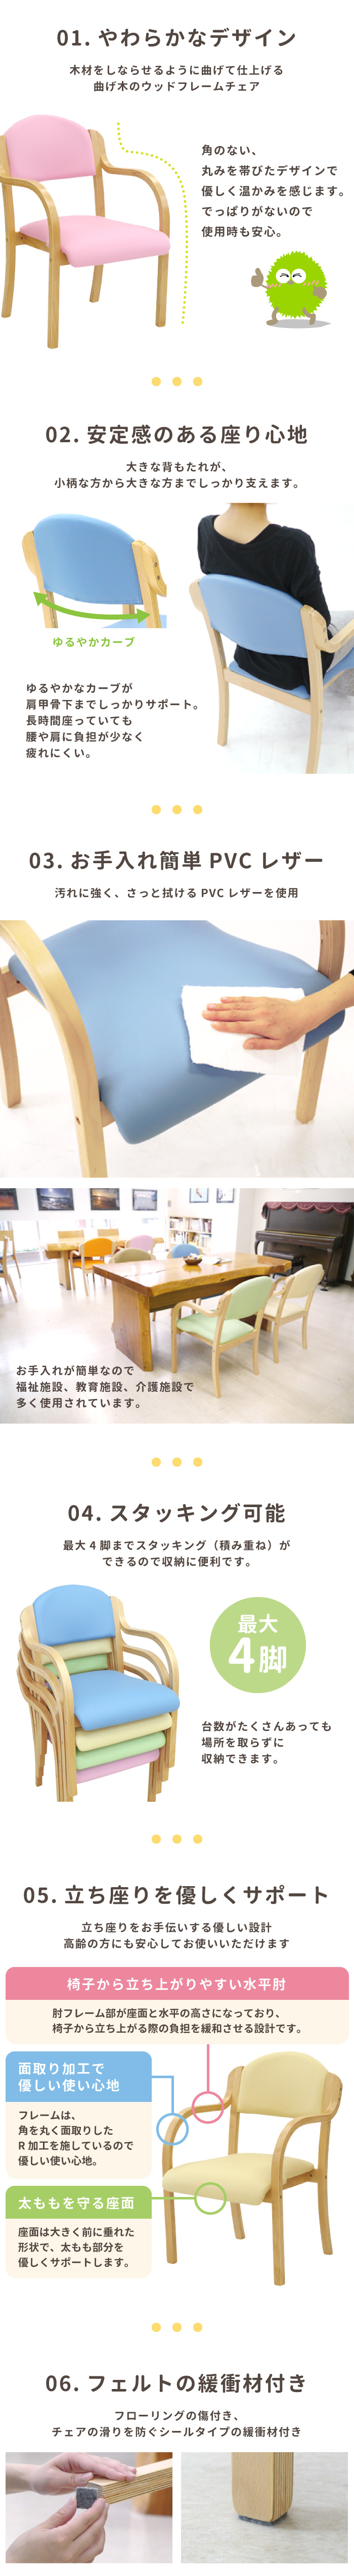 ダイニングチェア 介護椅子 肘付き 木製 レザー UHE-1の通販 オフィス家具通販サイトのLOOKIT(ルキット)